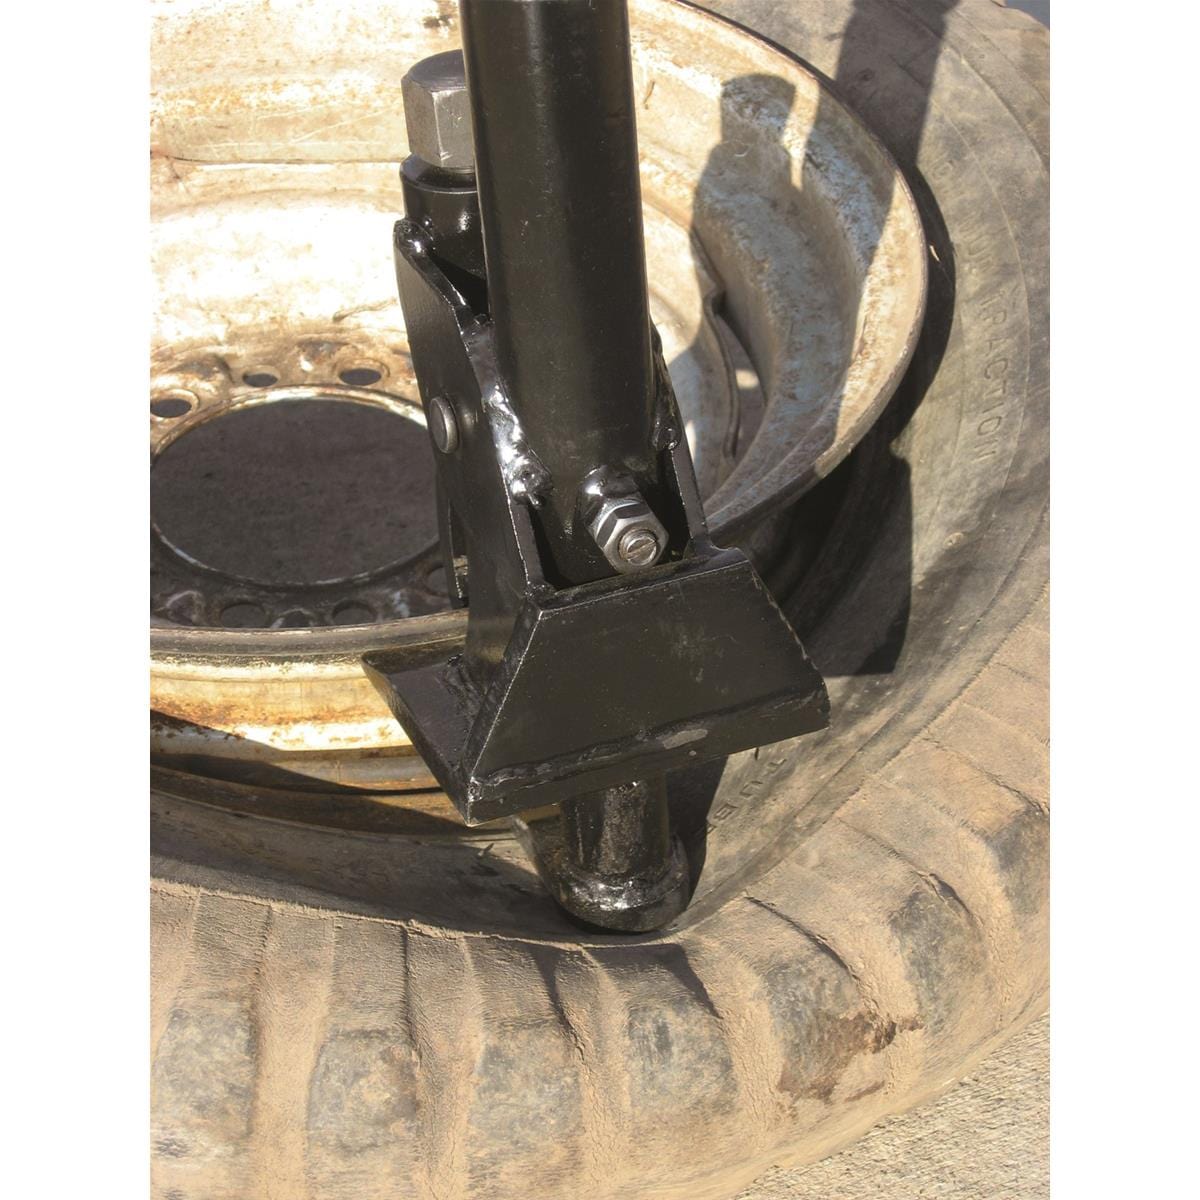 Manual Tire Bead Breaker